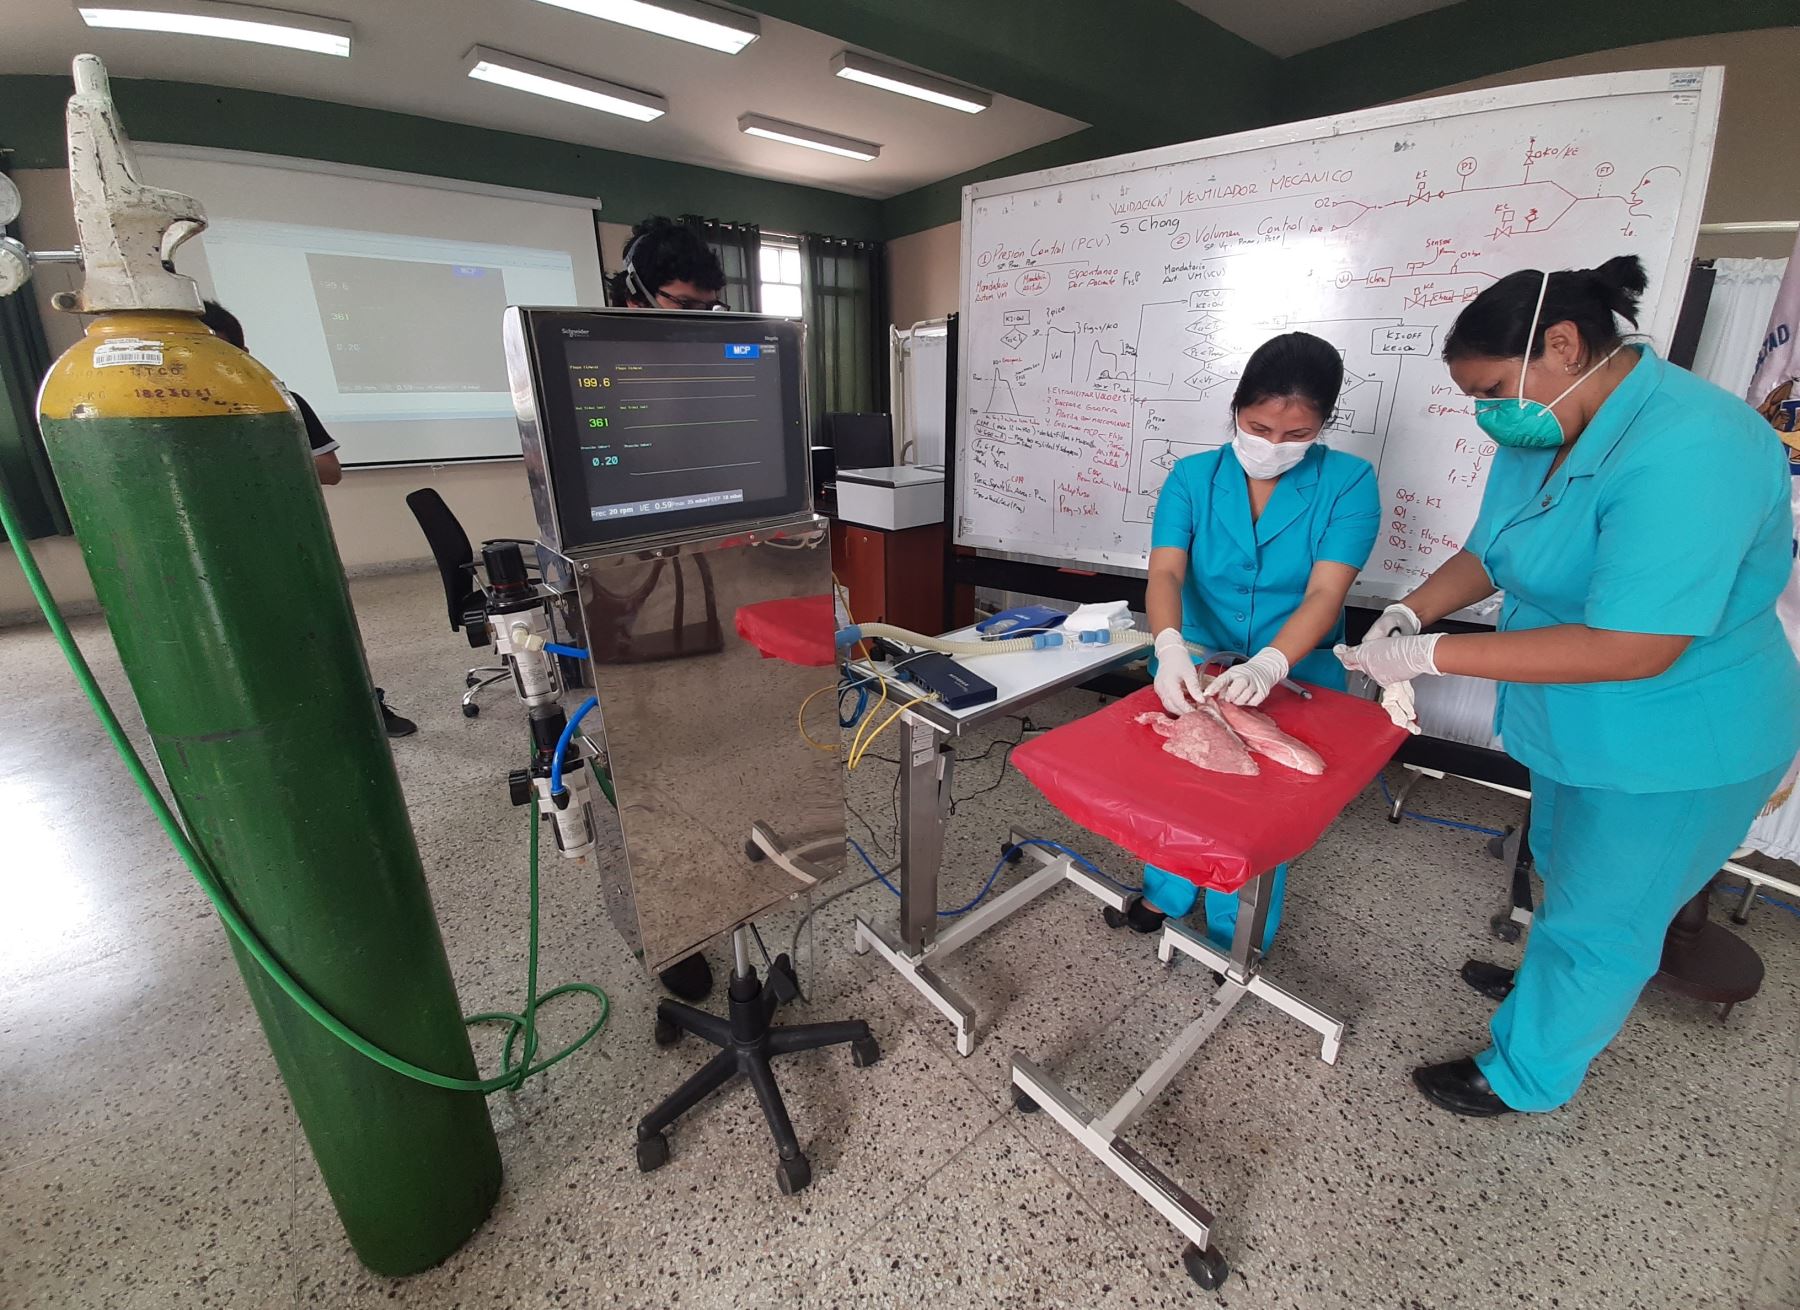 Ingenieros de La Libertad desarrollan prototipo de ventilador mecánico que permite brindar oxígeno a pacientes con covid-19 en estado consciente. Foto: ANDINA/difusión.